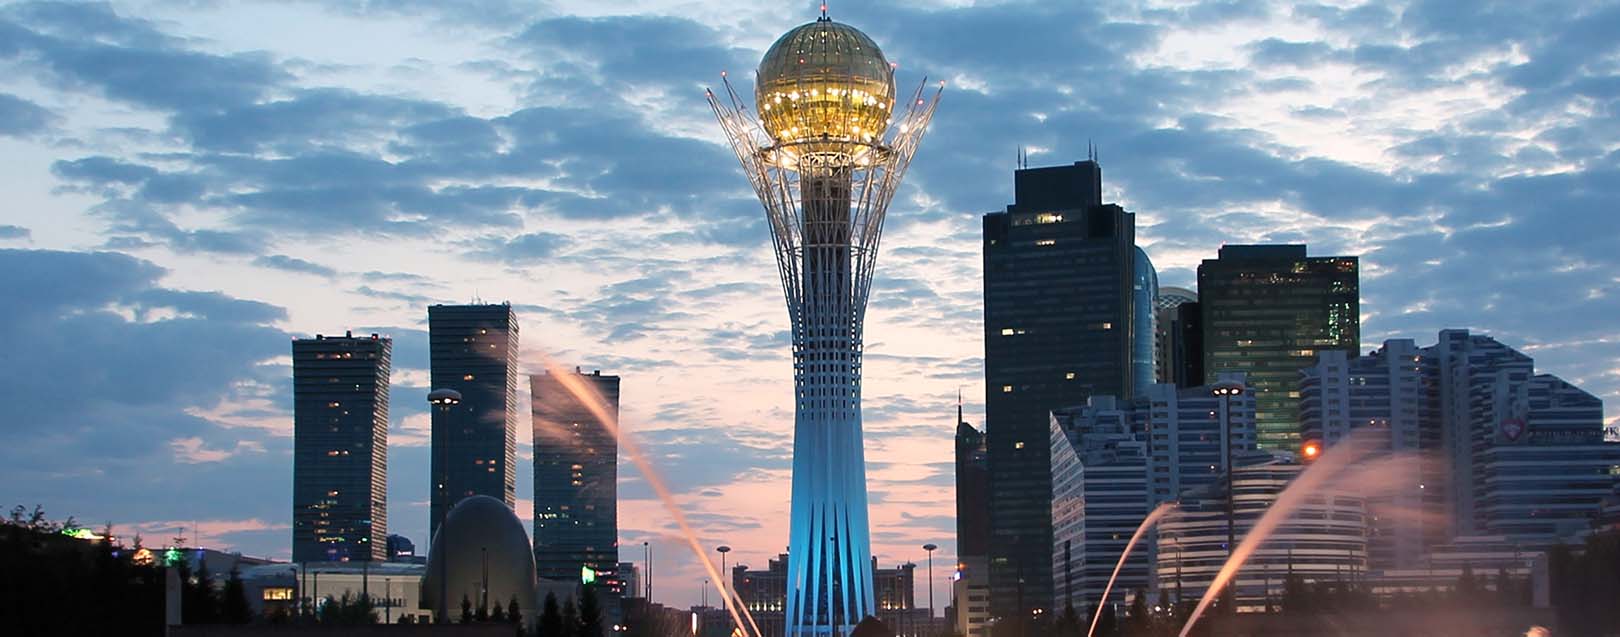 NBCC plans to enter Kazakhstan, Kyrgyzstan markets